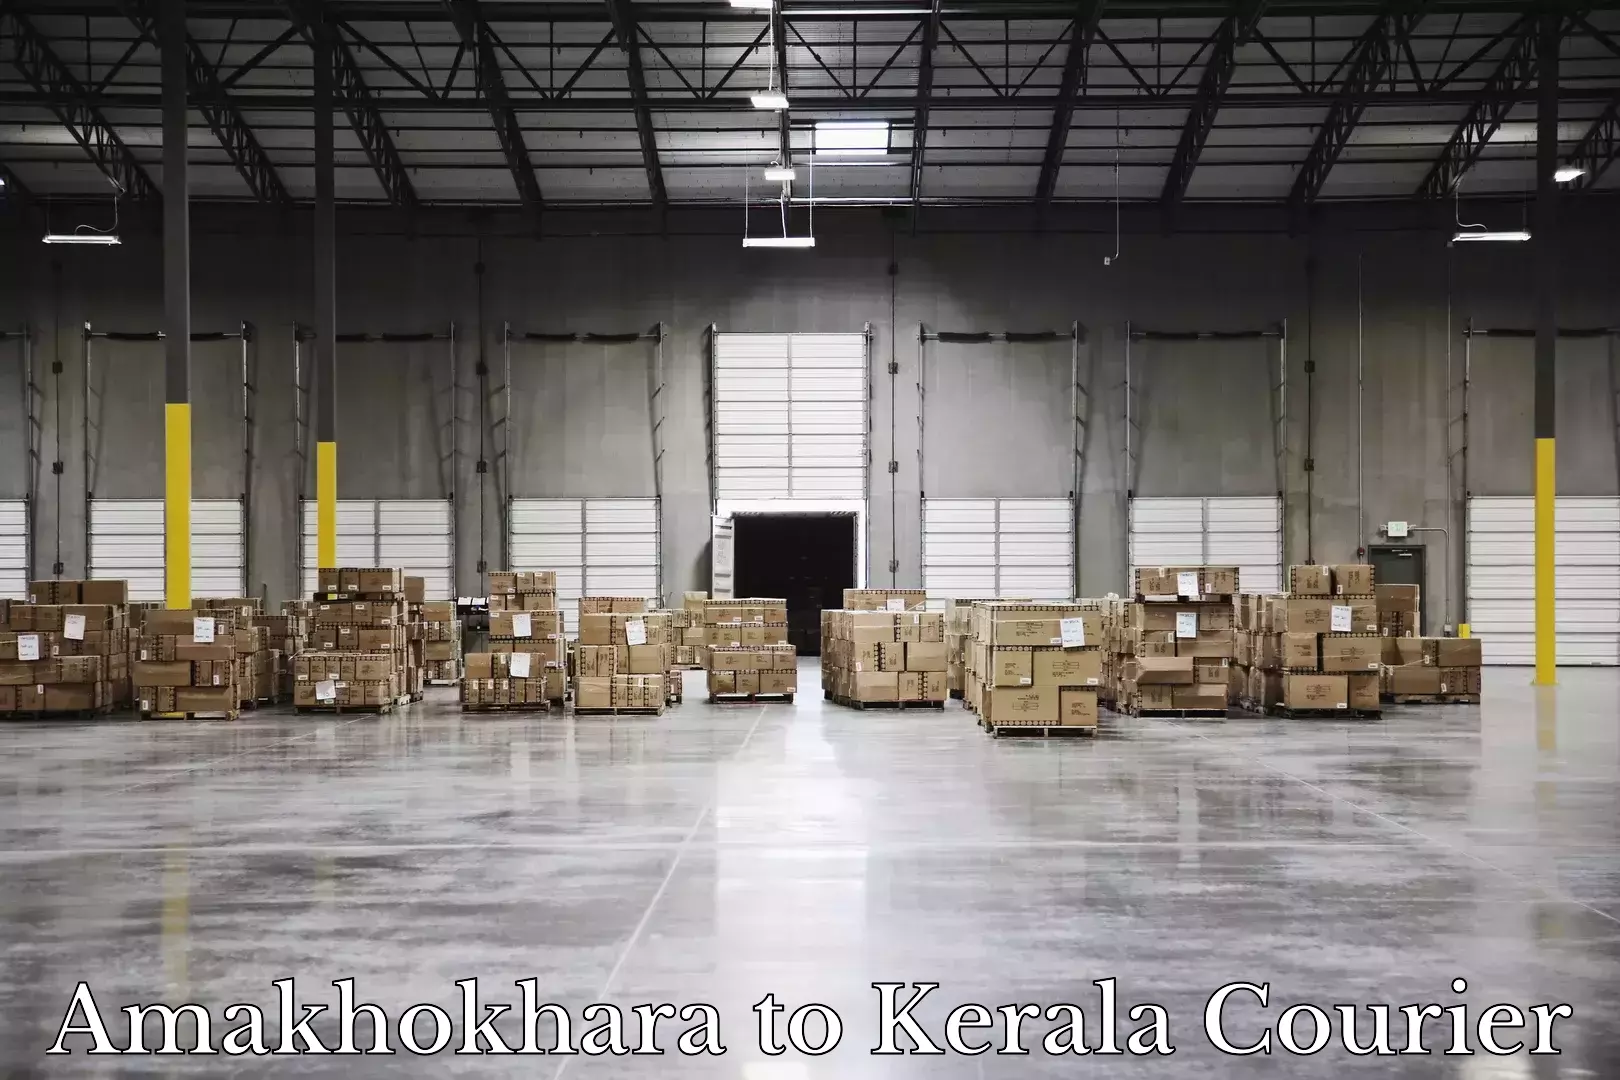 Online luggage shipping booking Amakhokhara to Kerala